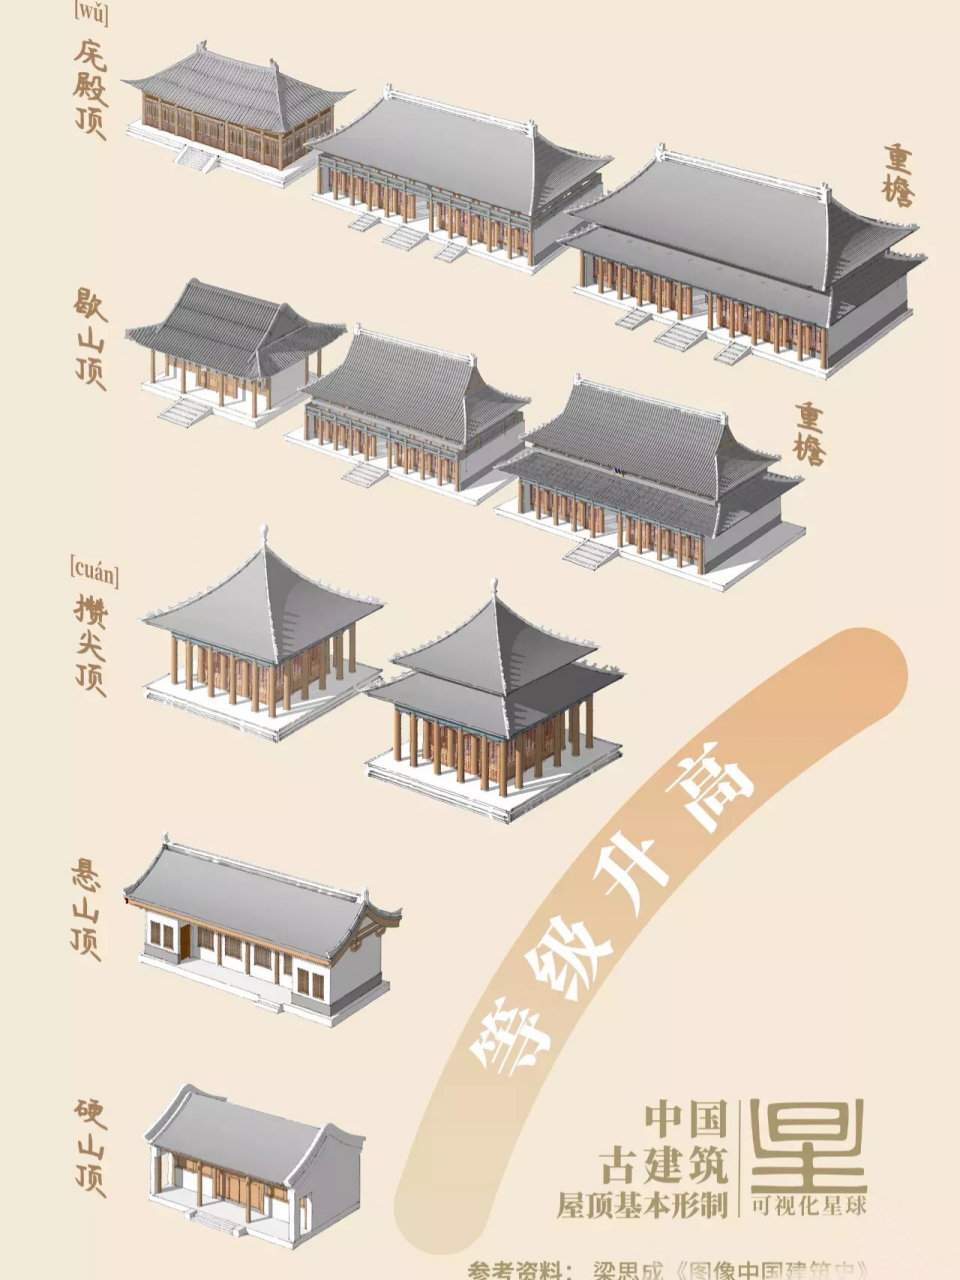 中国传统古建筑屋顶等级 第一级:庑殿顶